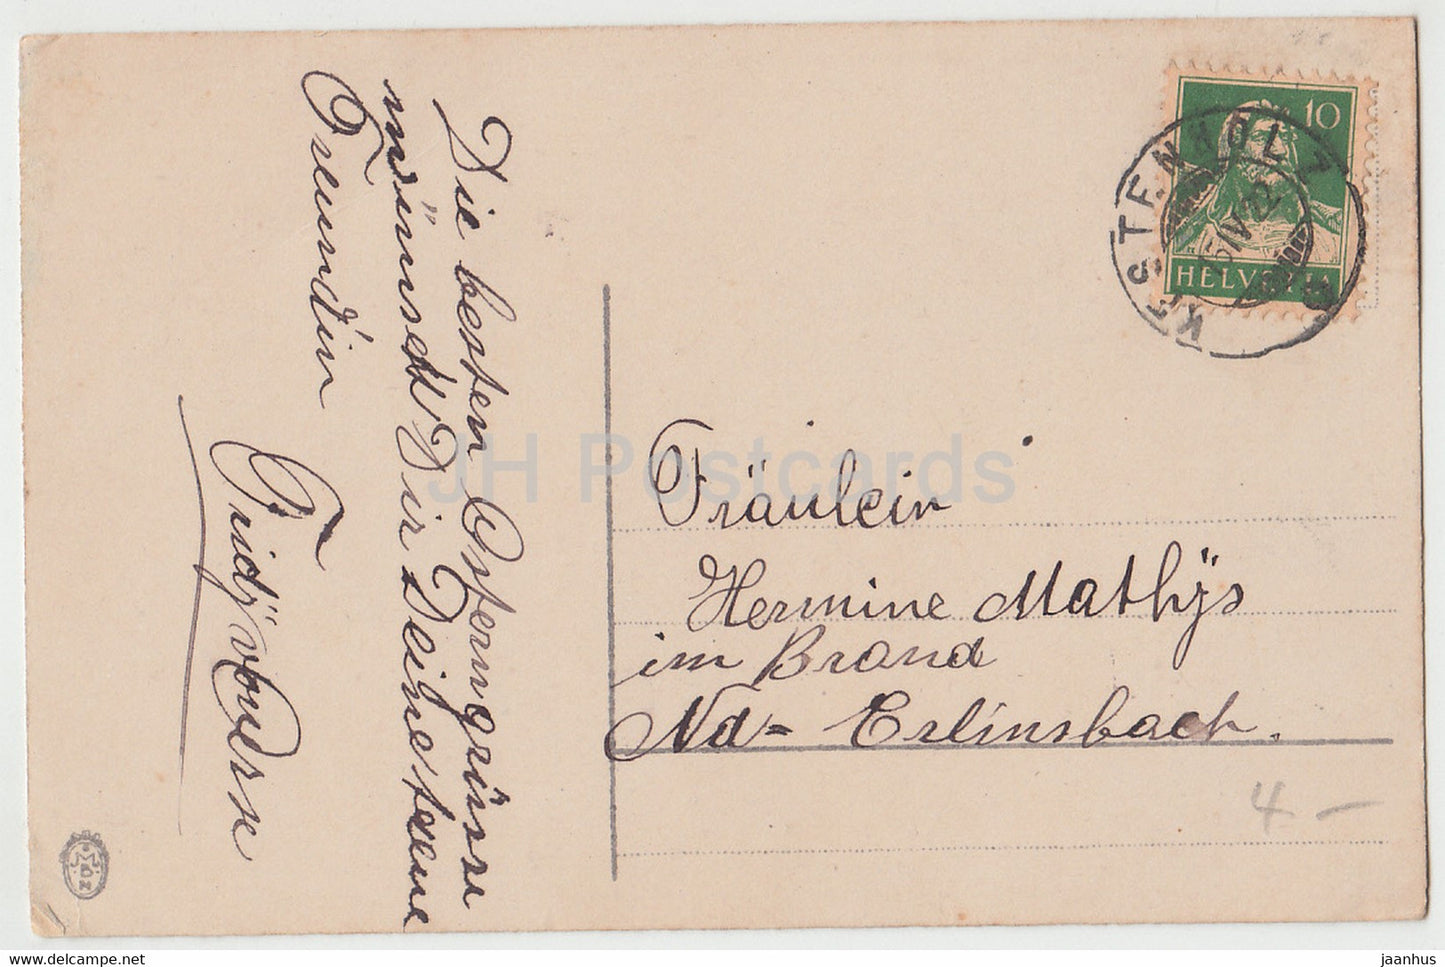 Carte de vœux de Pâques - Oster Grusse - cloche - fleurs - MBM - carte postale ancienne - 1922 - Allemagne - inutilisée